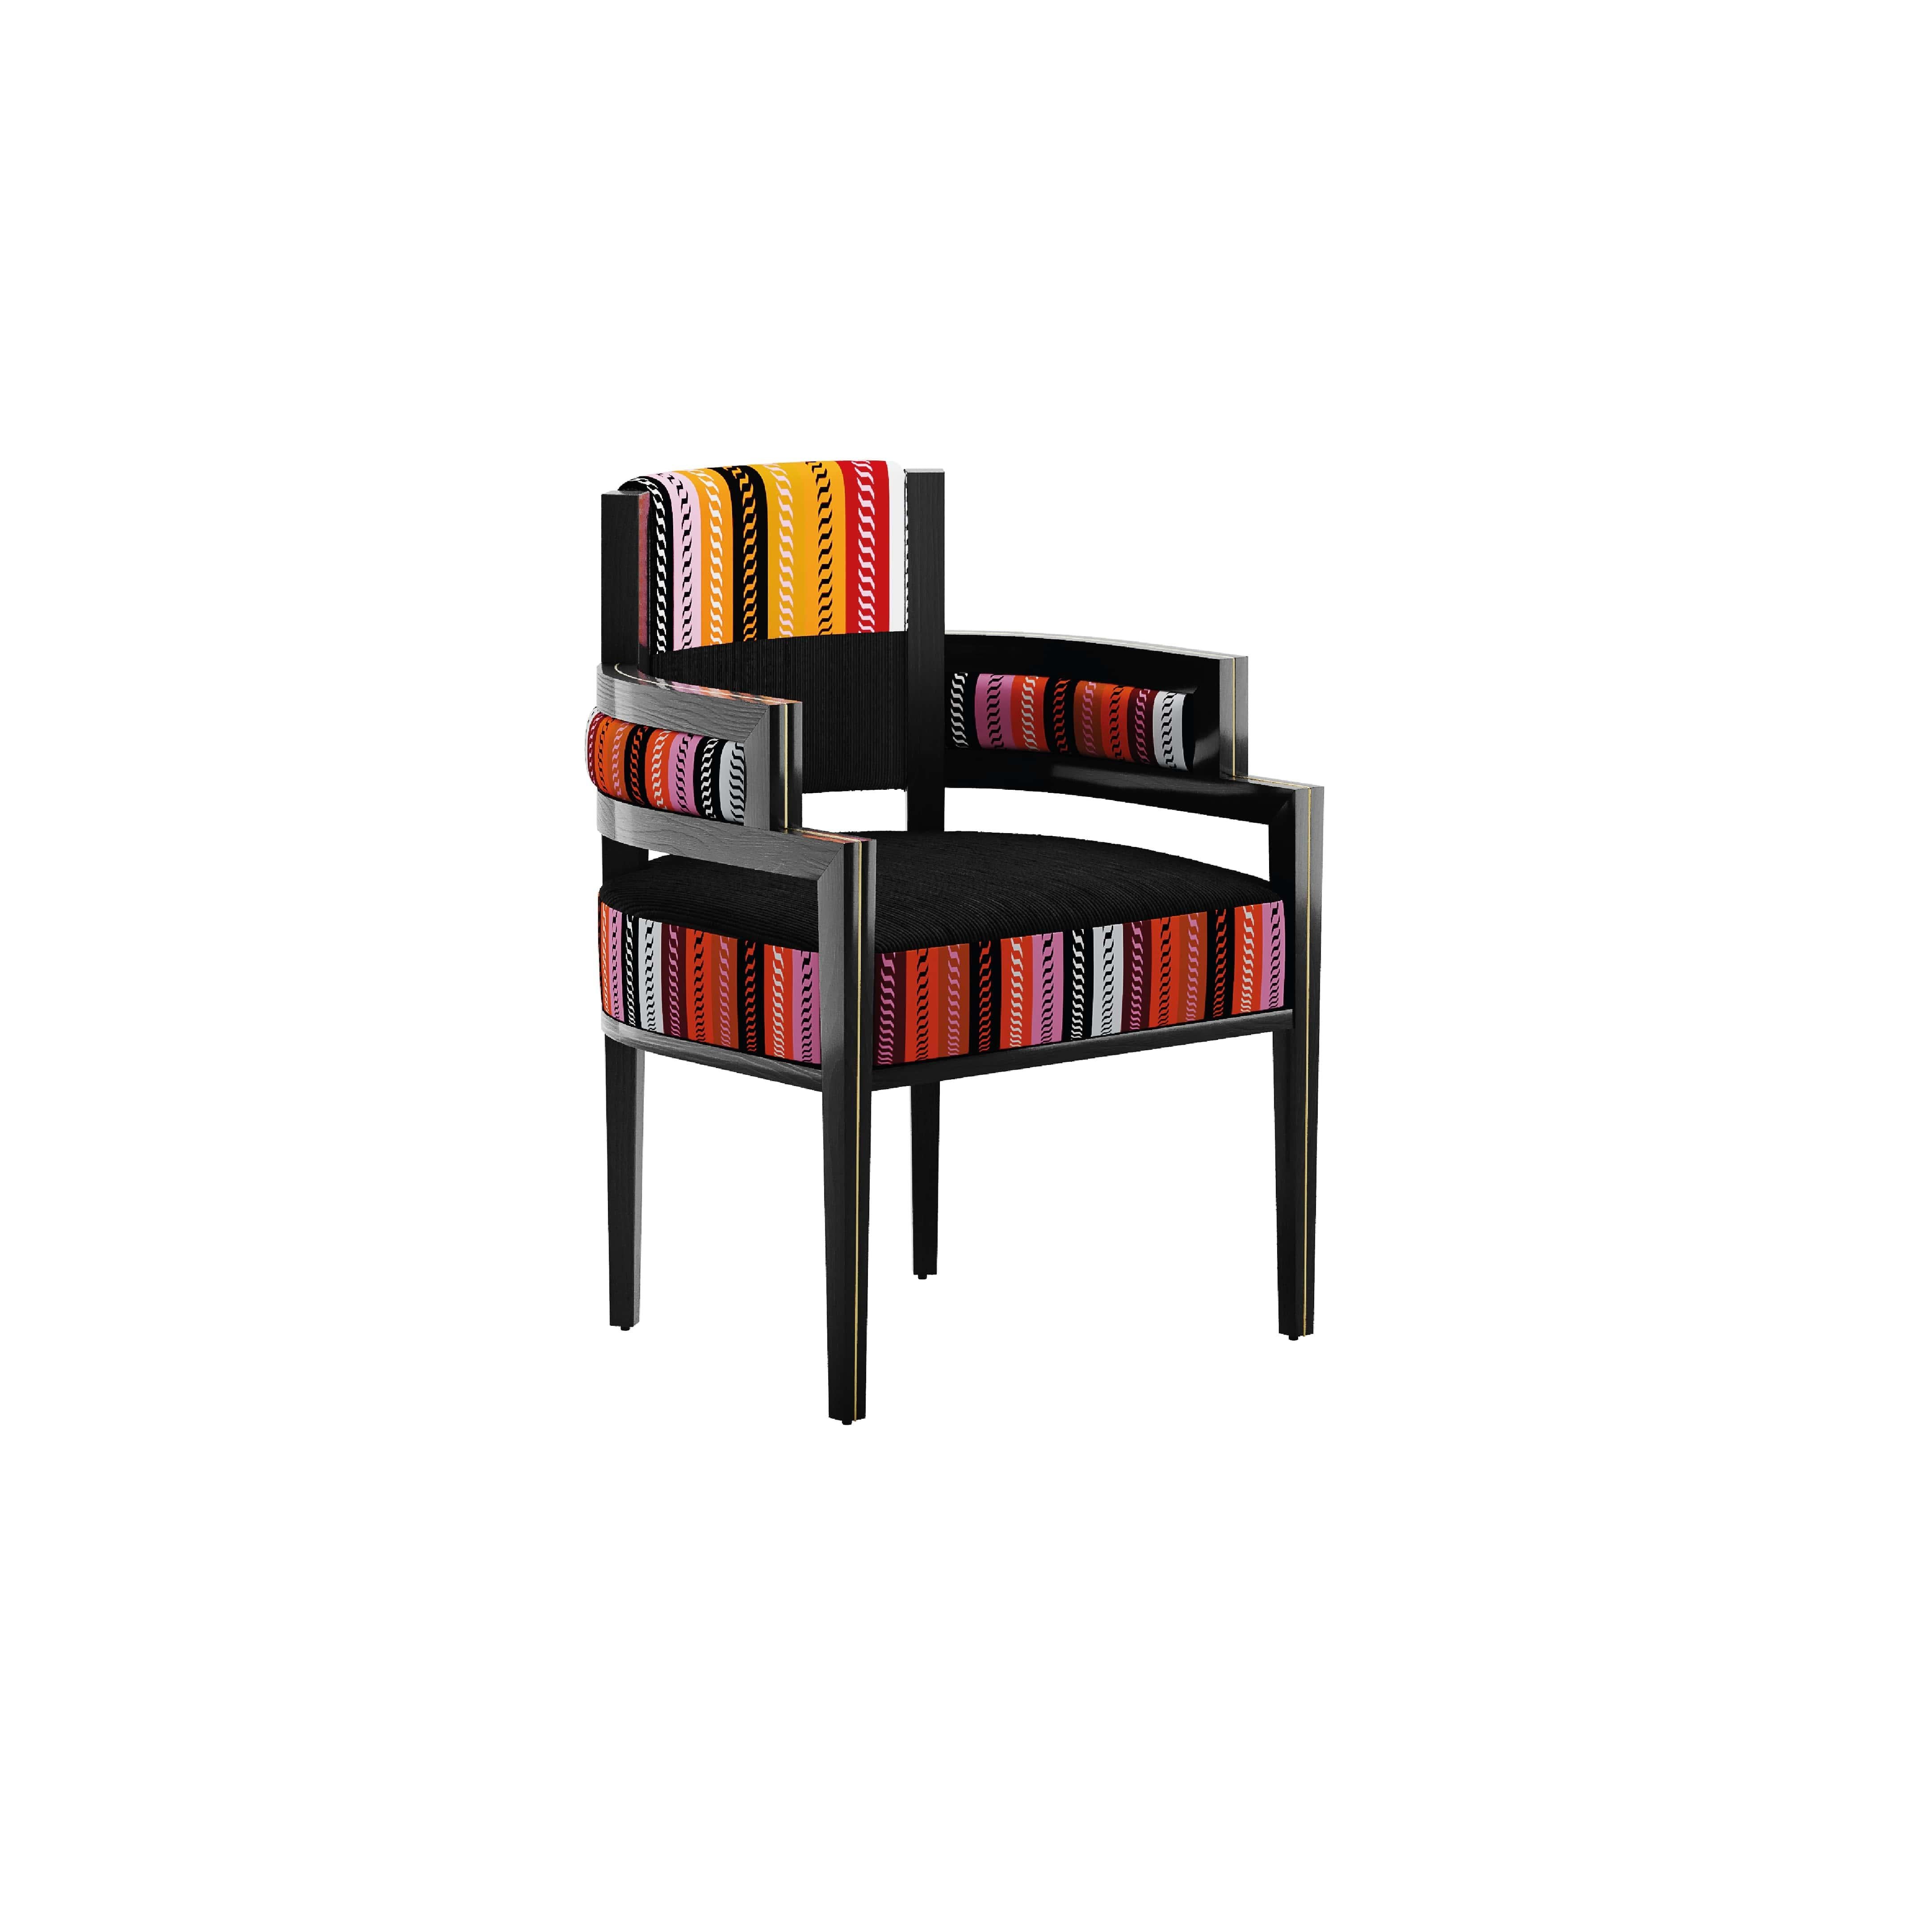 La chaise Pina Menízia est une chaise haut de gamme à la silhouette simple mais sophistiquée.

Conçue pour offrir le plus grand confort et s'imposer dans tout espace de vie, la Pina Chair Menízia présente une structure élégante et des finitions